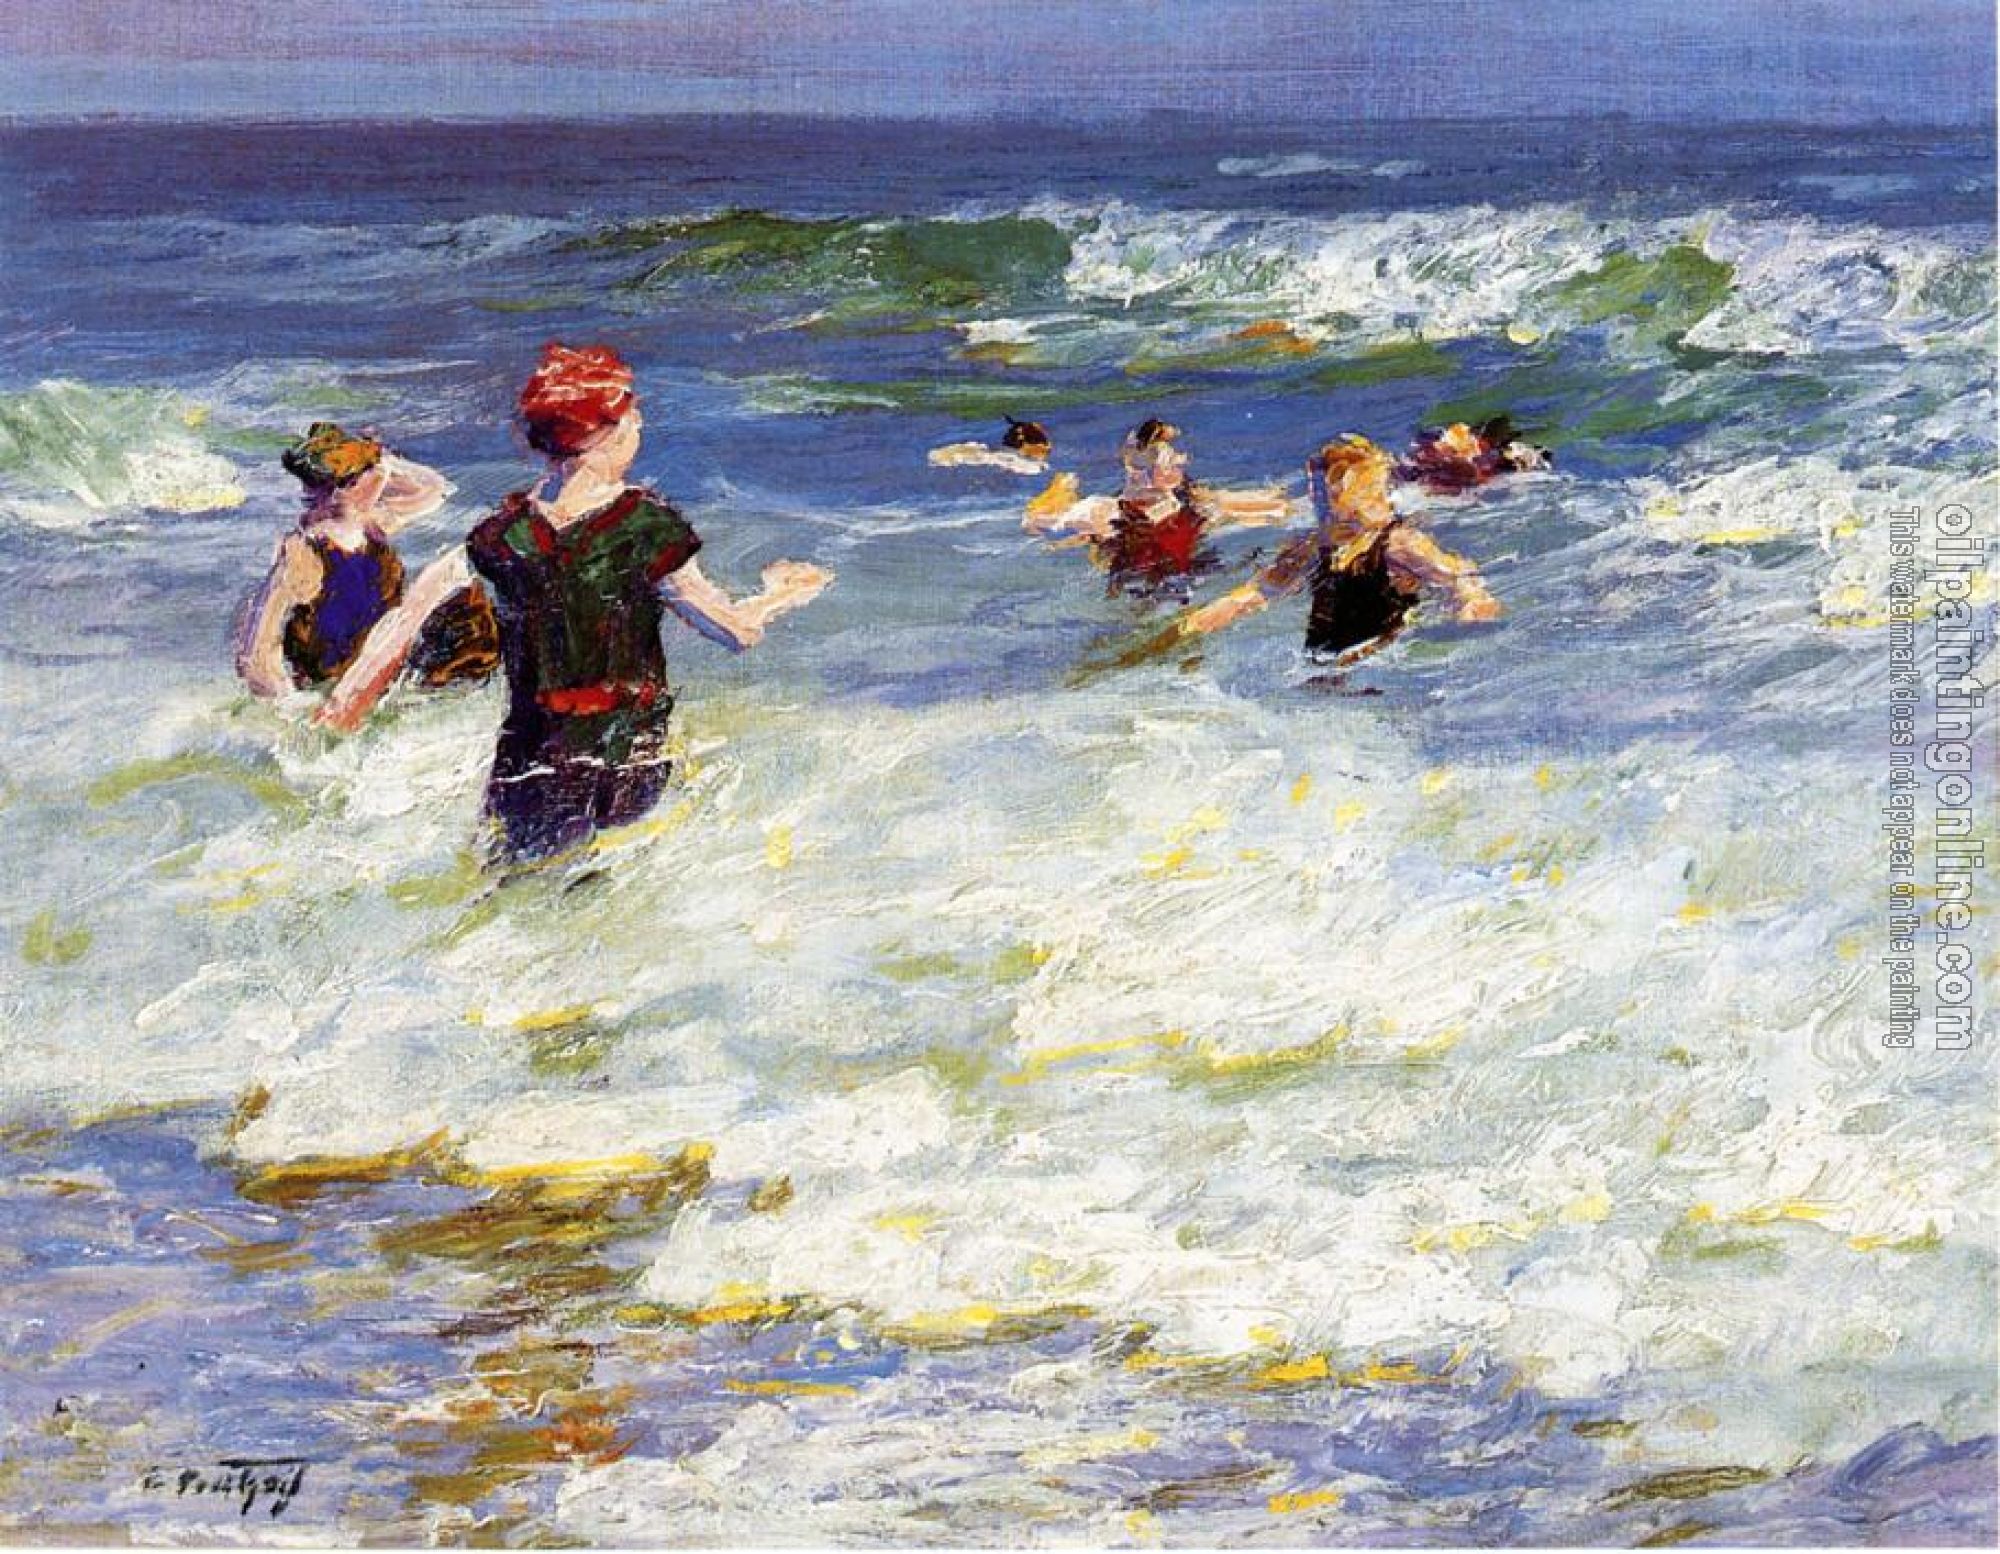 Potthast, Edward Henry - In the Surf